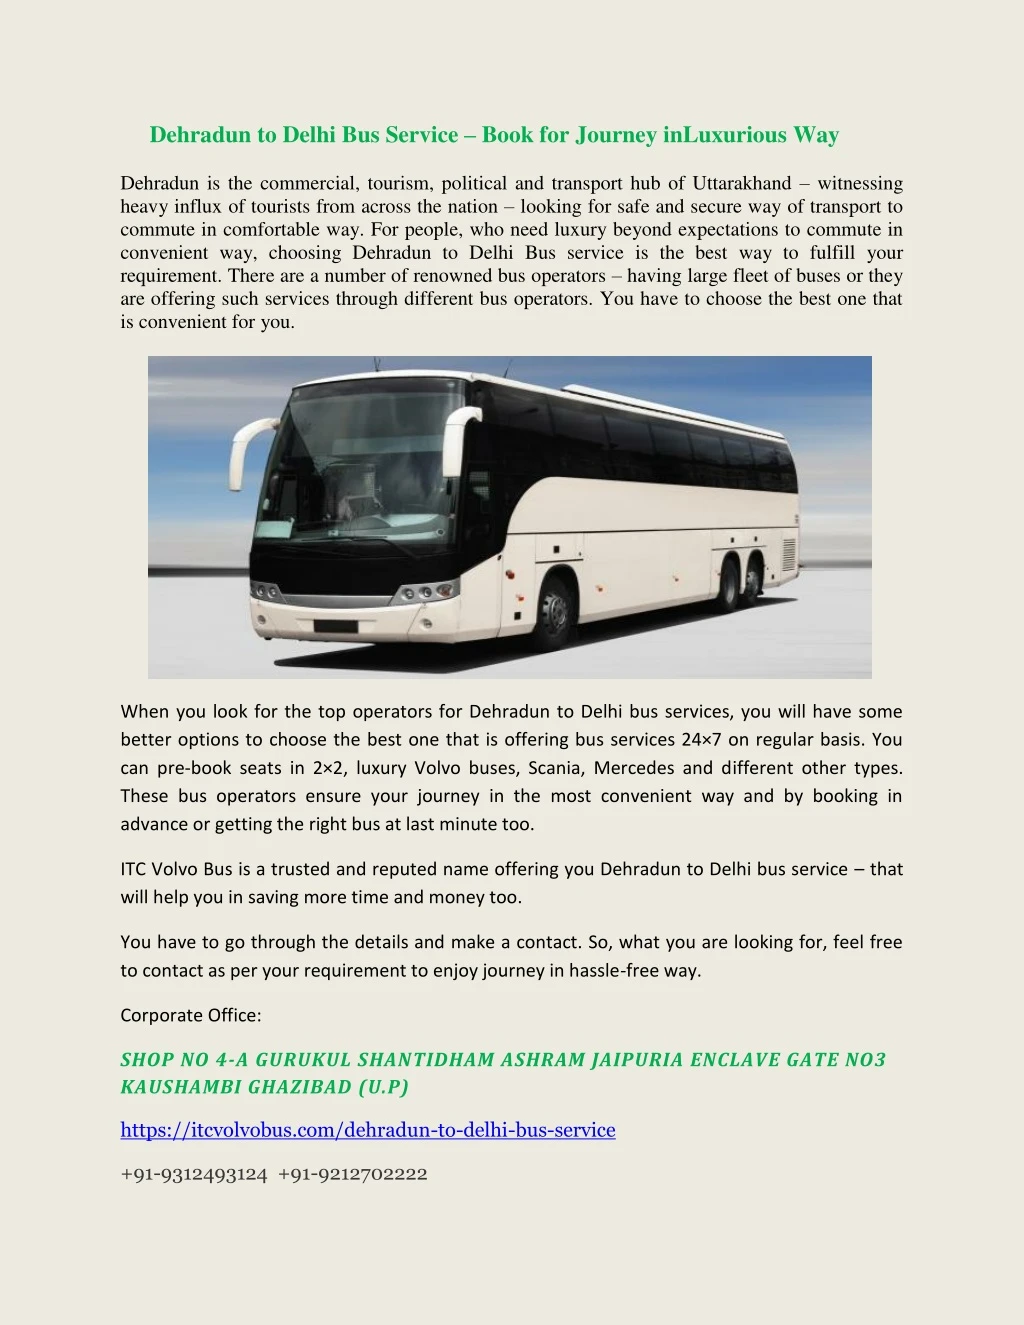 dehradun to delhi bus service book for journey